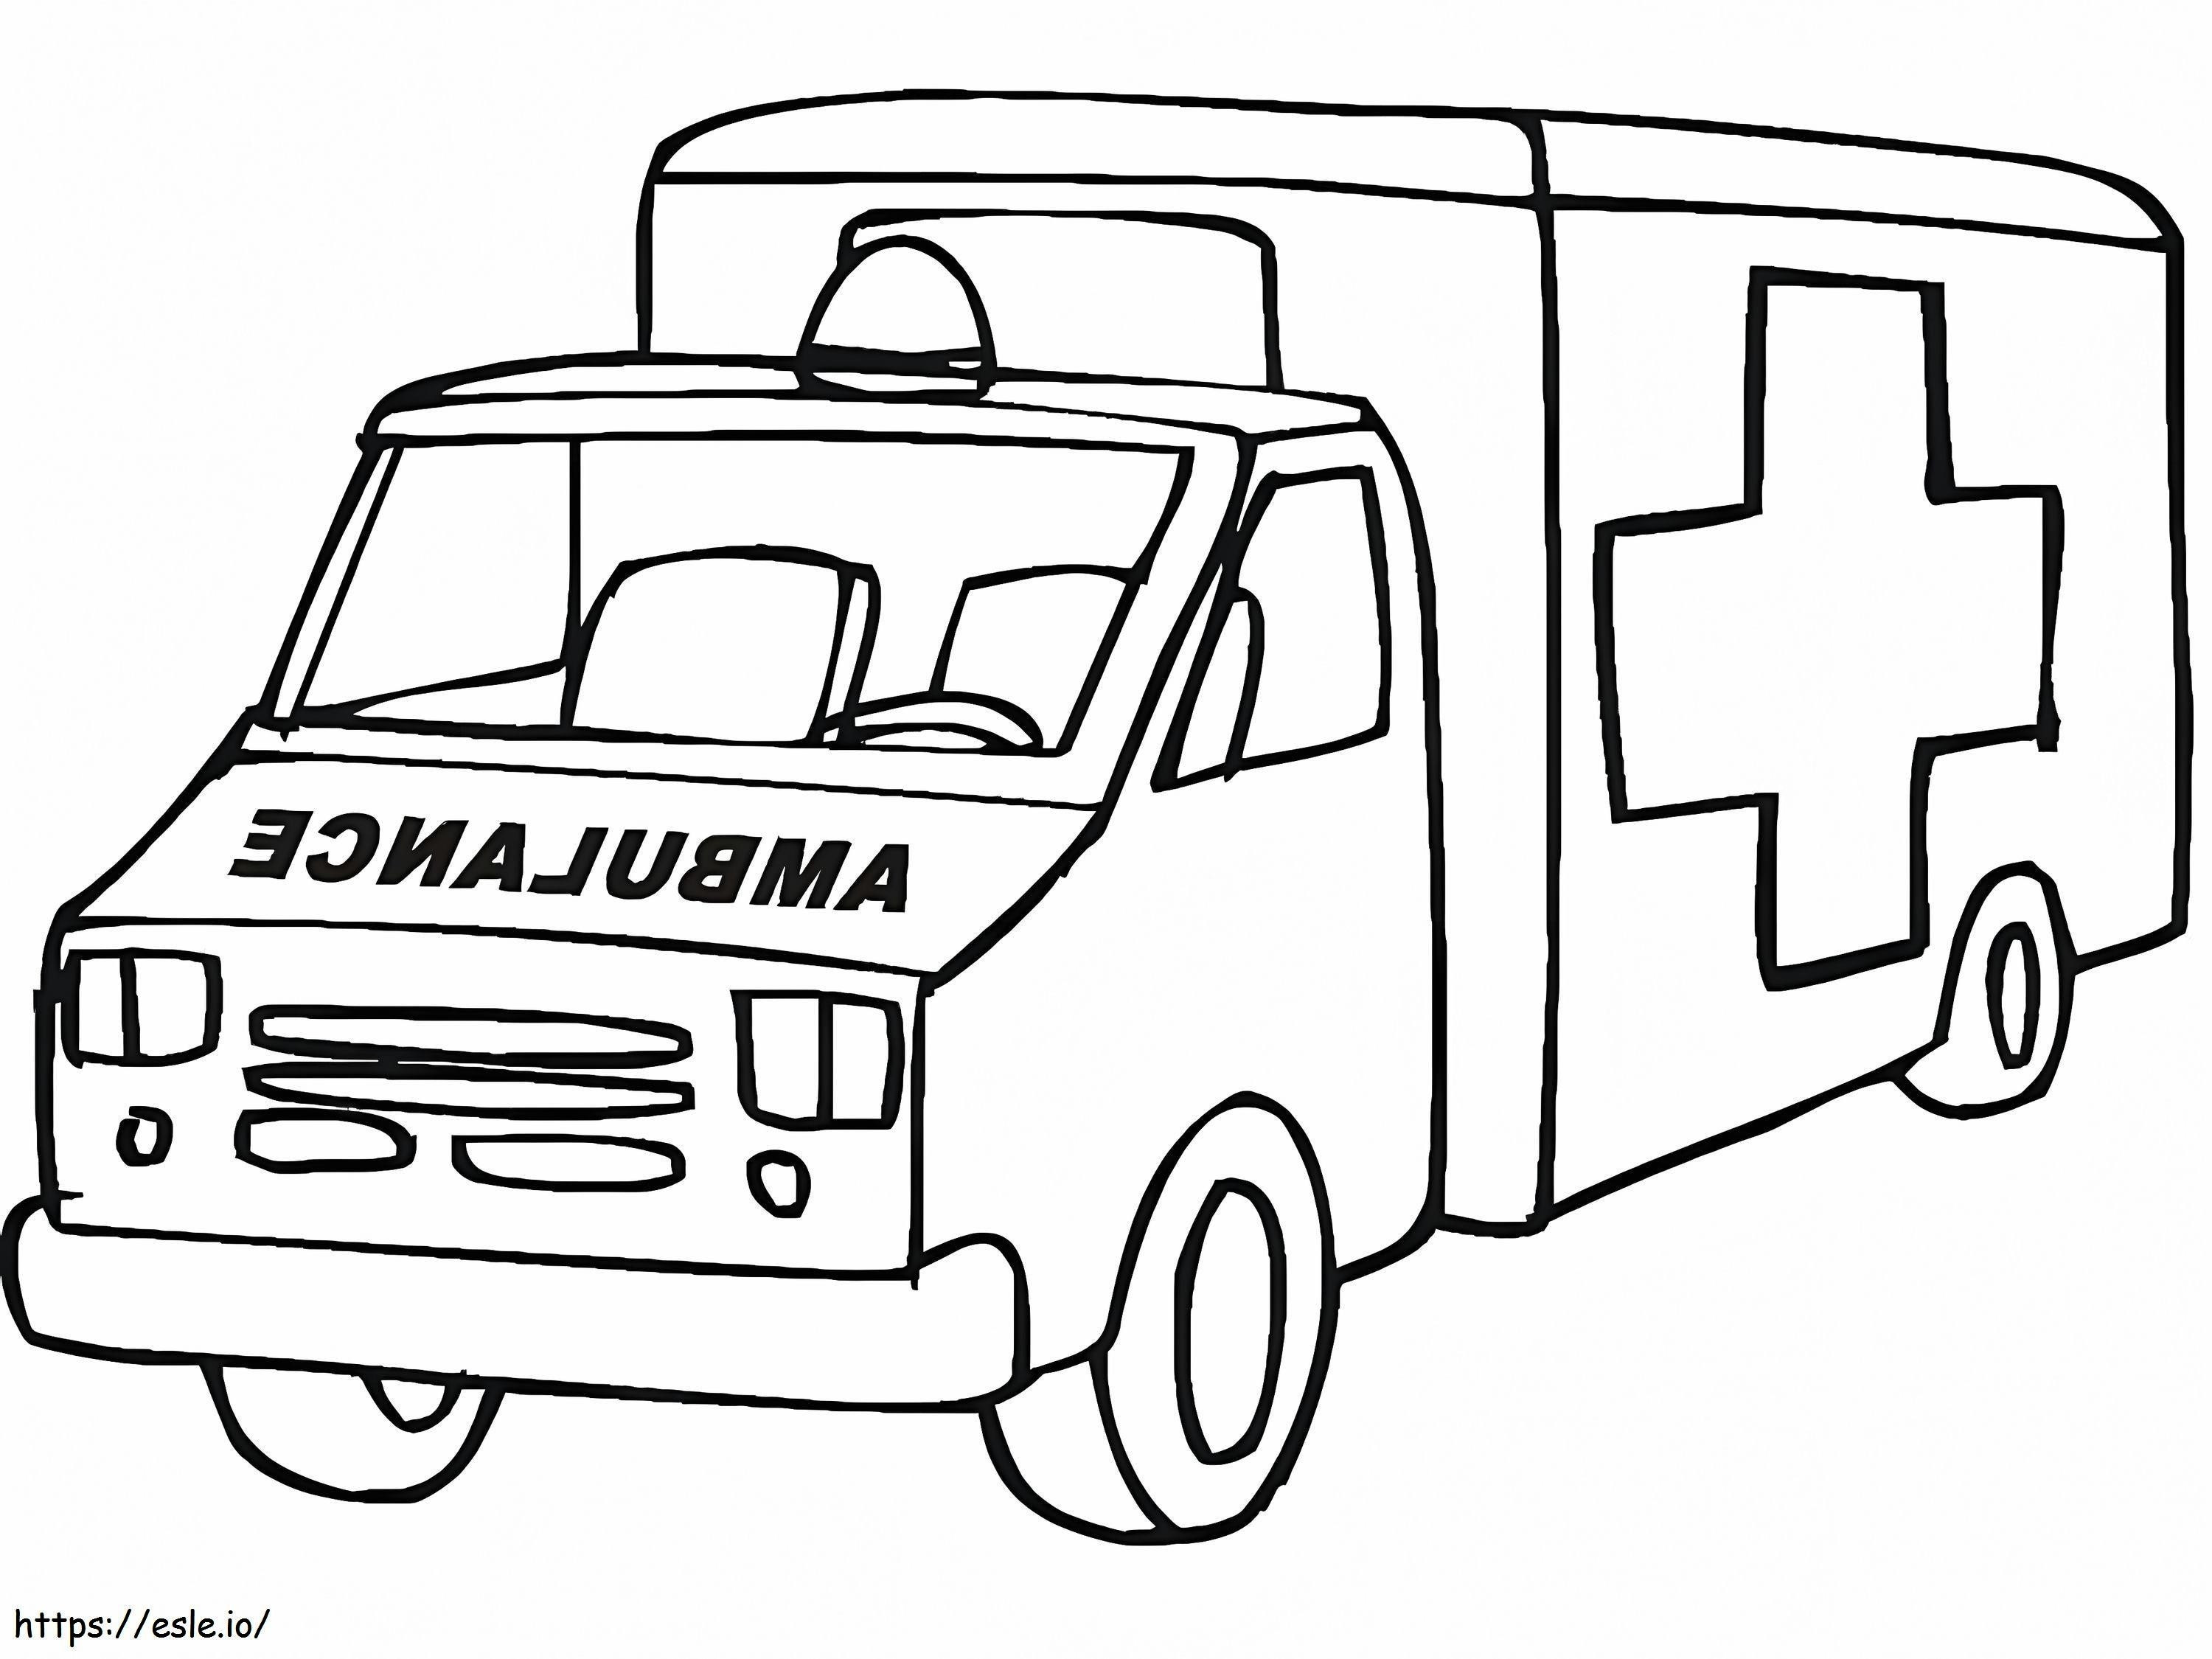 Krankenwagen 23 ausmalbilder